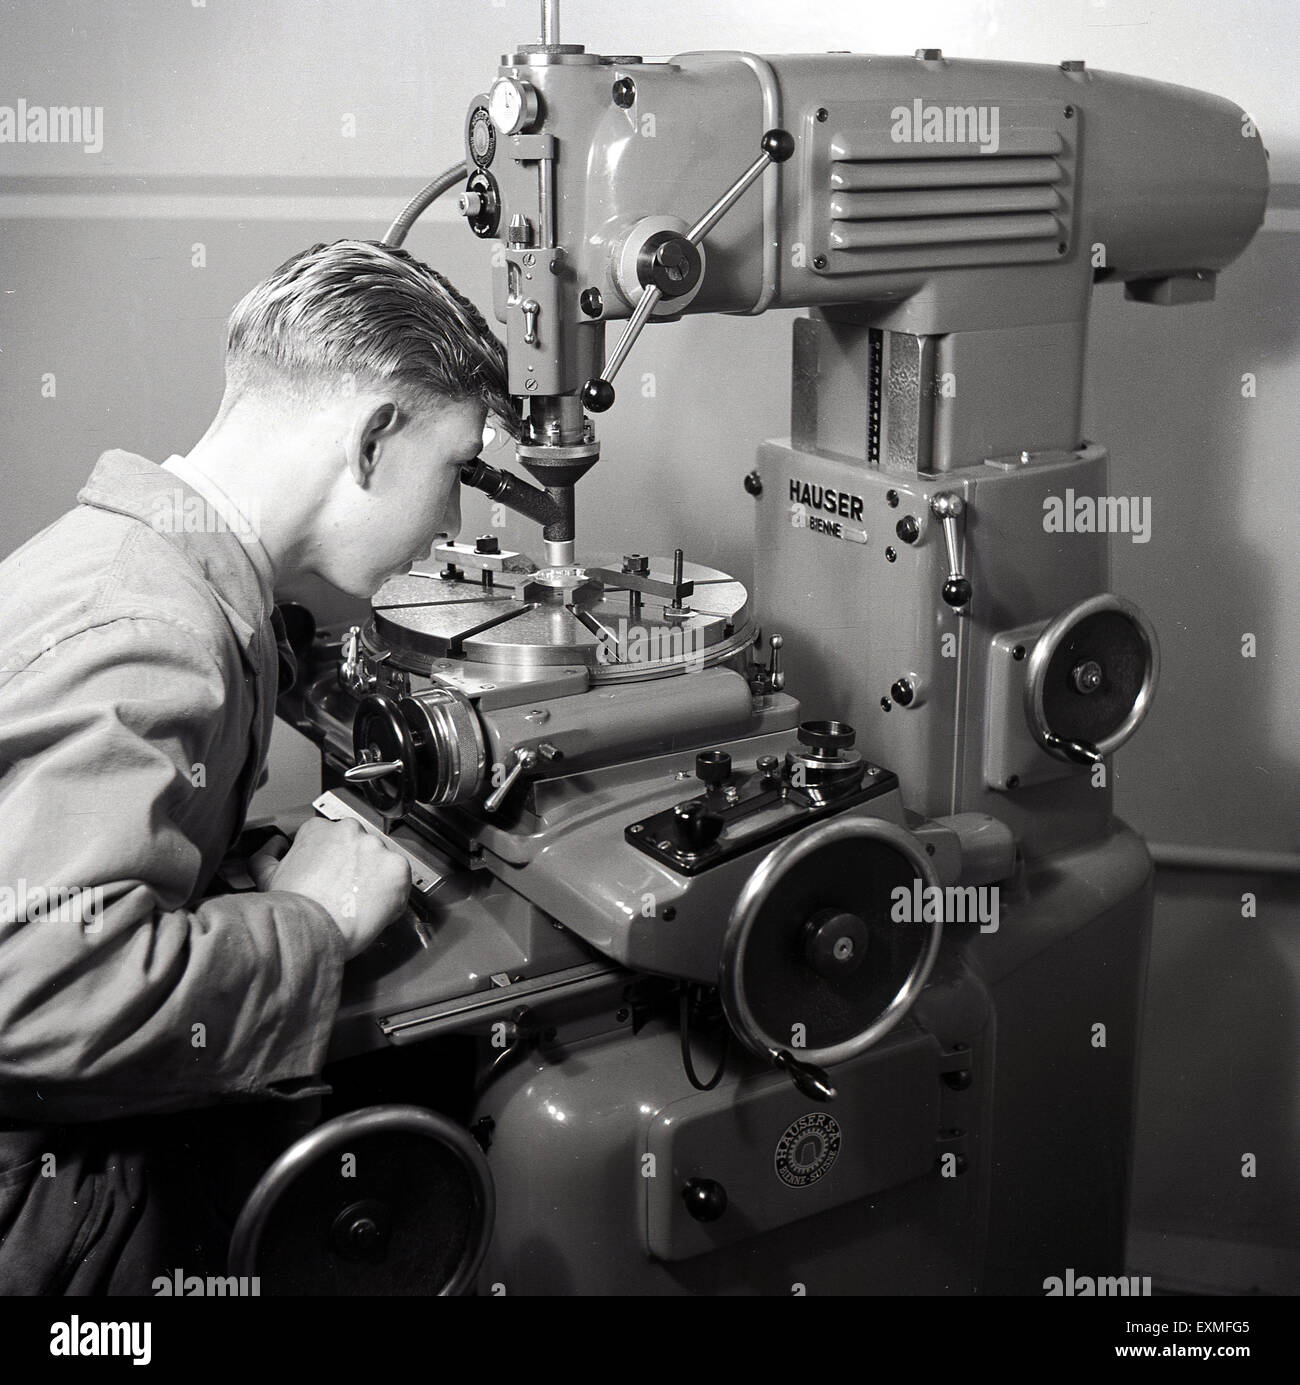 anni '50, immagine storica che mostra un giovane apprendista maschile che utilizza una macchina utensile di precisione in metallo azionata da una potenza soppressa. Una macchina utensile è un utensile, ad azionamento elettrico o manuale per la lavorazione del metallo mediante taglio, molatura o sagomatura. Foto Stock